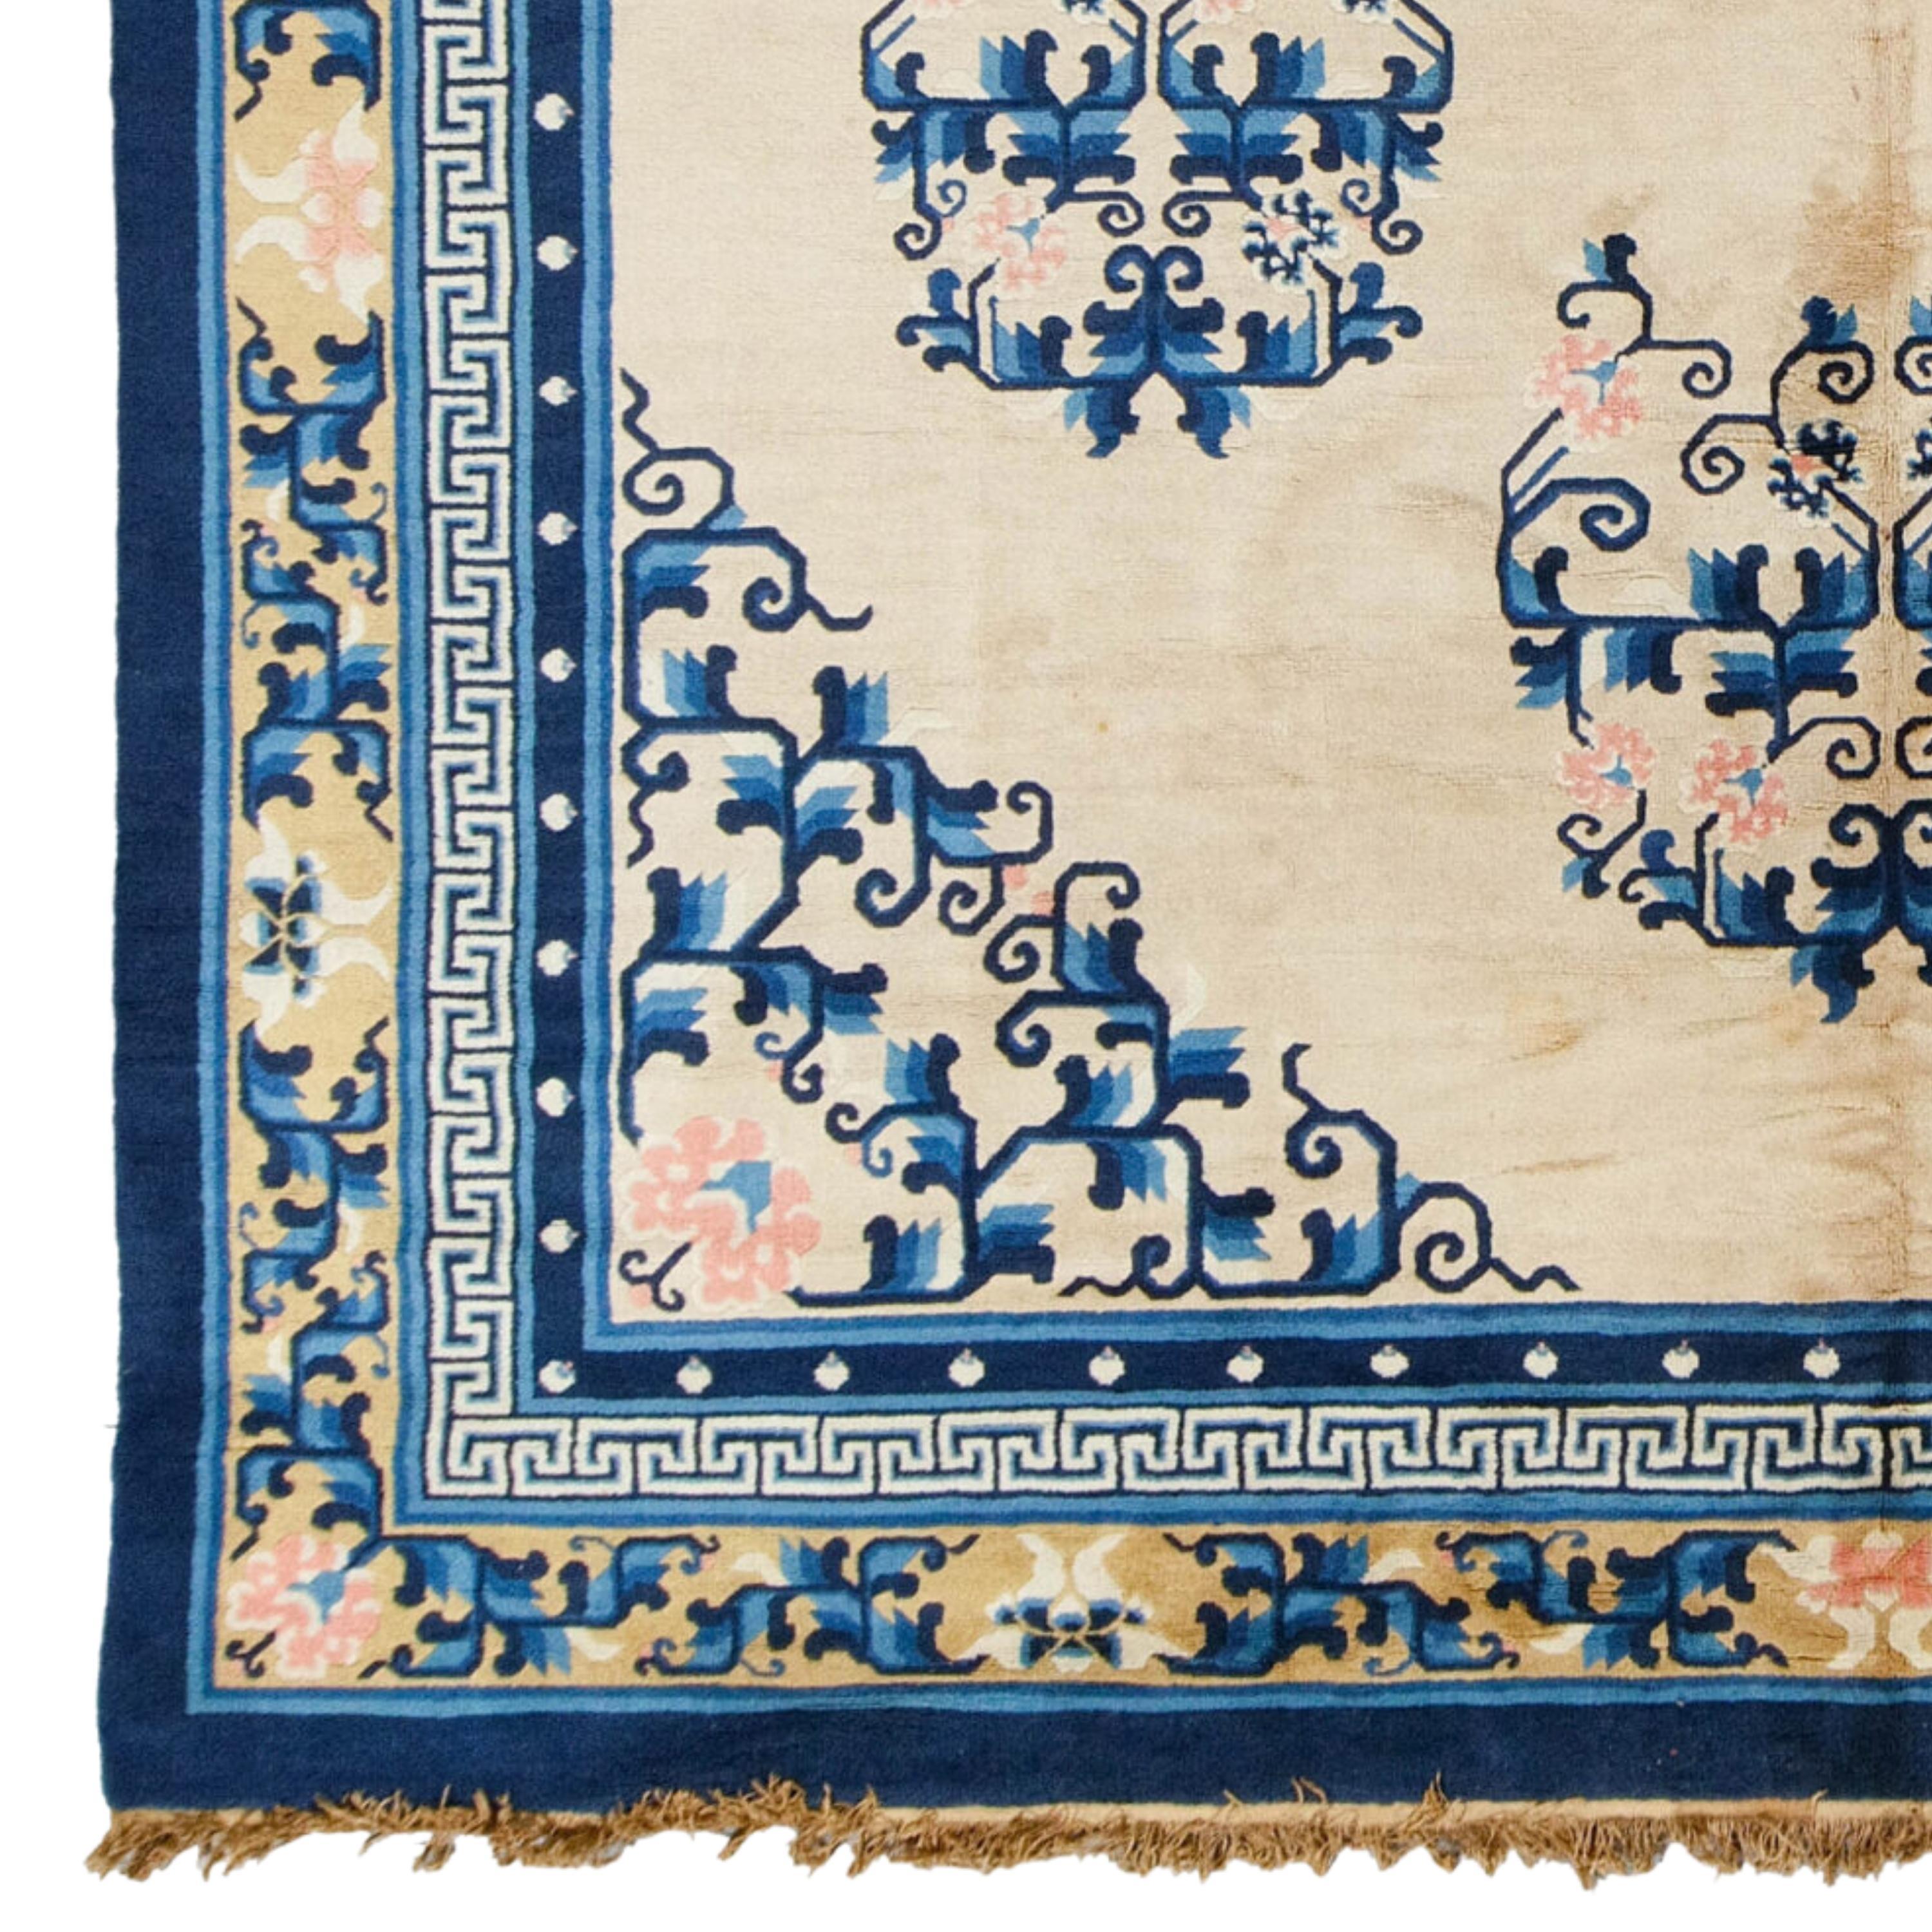 Diese Farben werden mit natürlichen Wurzelfarben gewonnen. Die Muster der alten chinesischen Peking-Teppiche enthalten oft ein zentrales Medaillon in Form eines großen achtzackigen Sterns oder einer Raute und kleinere Medaillons an den Ecken. Diese